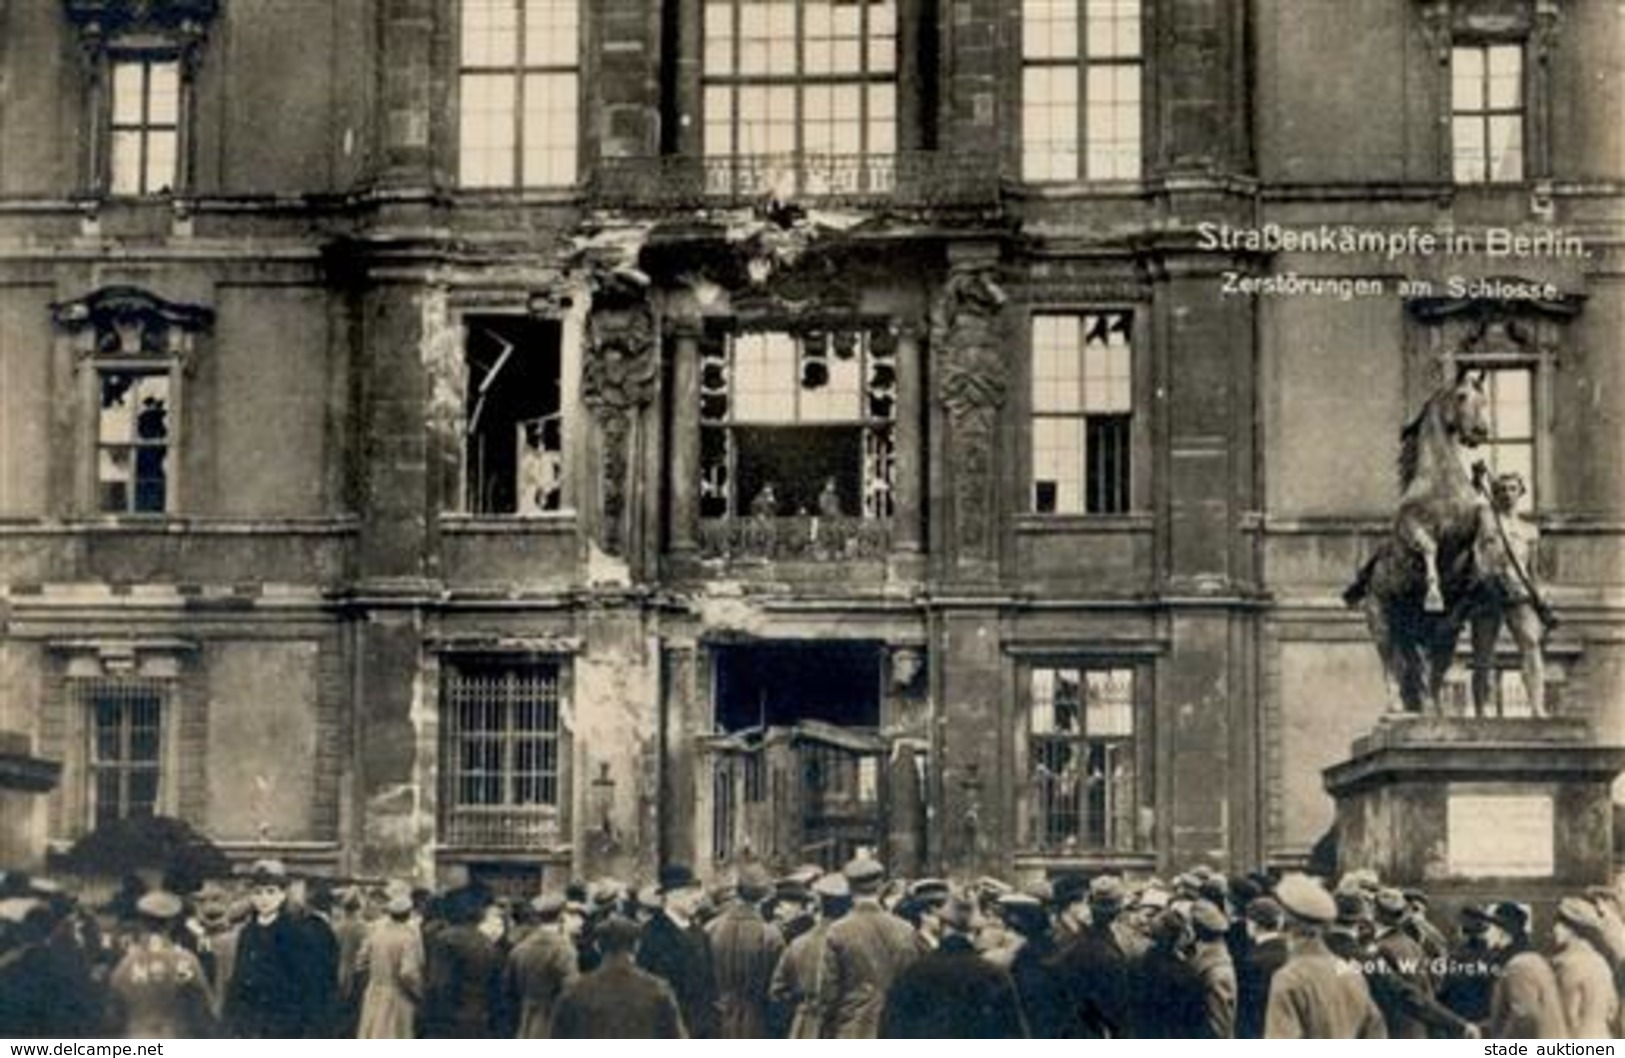 REVOLUTION BERLIN 1919 - STRASSENKÄMPFE In Berlin No. 5 - Zerstörungen Am Schloss I - Warships